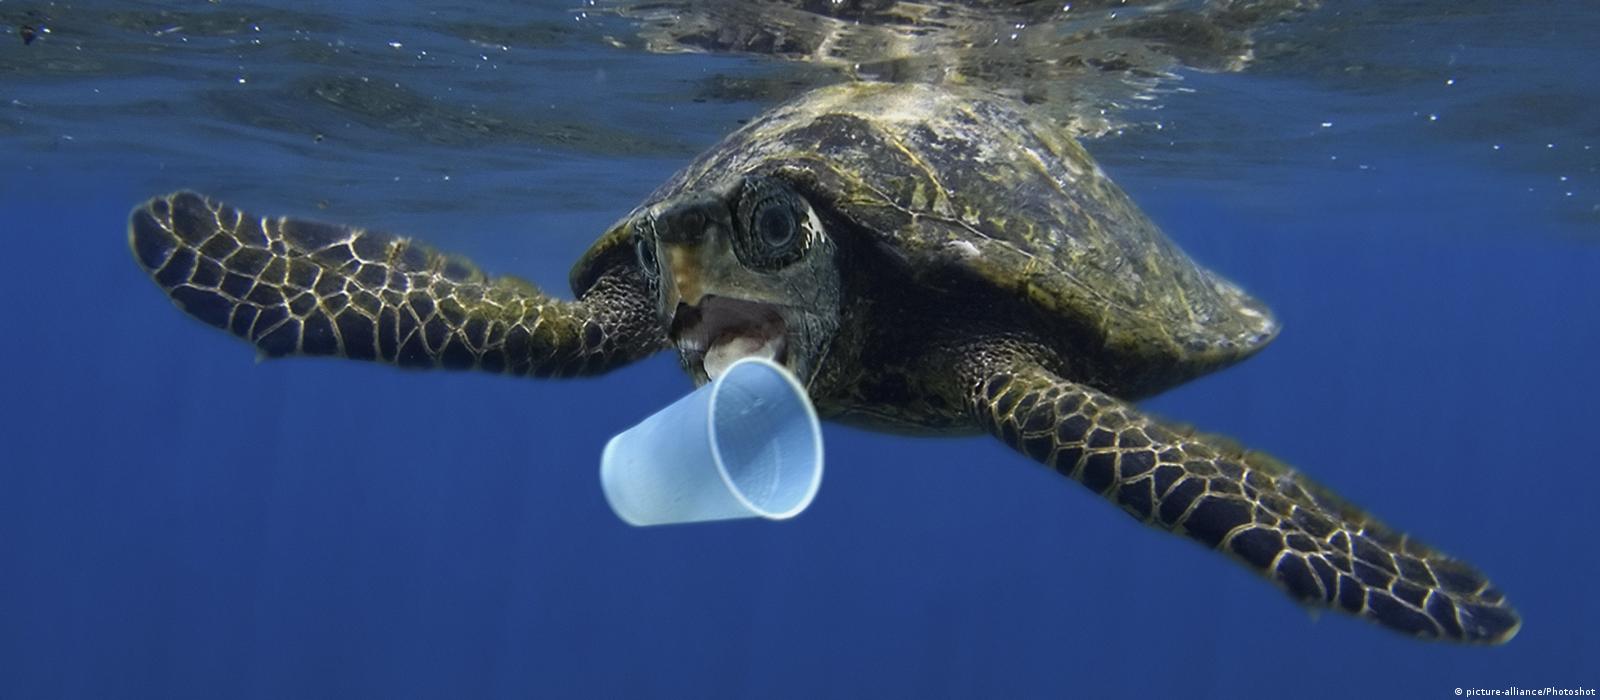 EU Commission unveils plans for plastic waste ban – DW – 05/28/2018